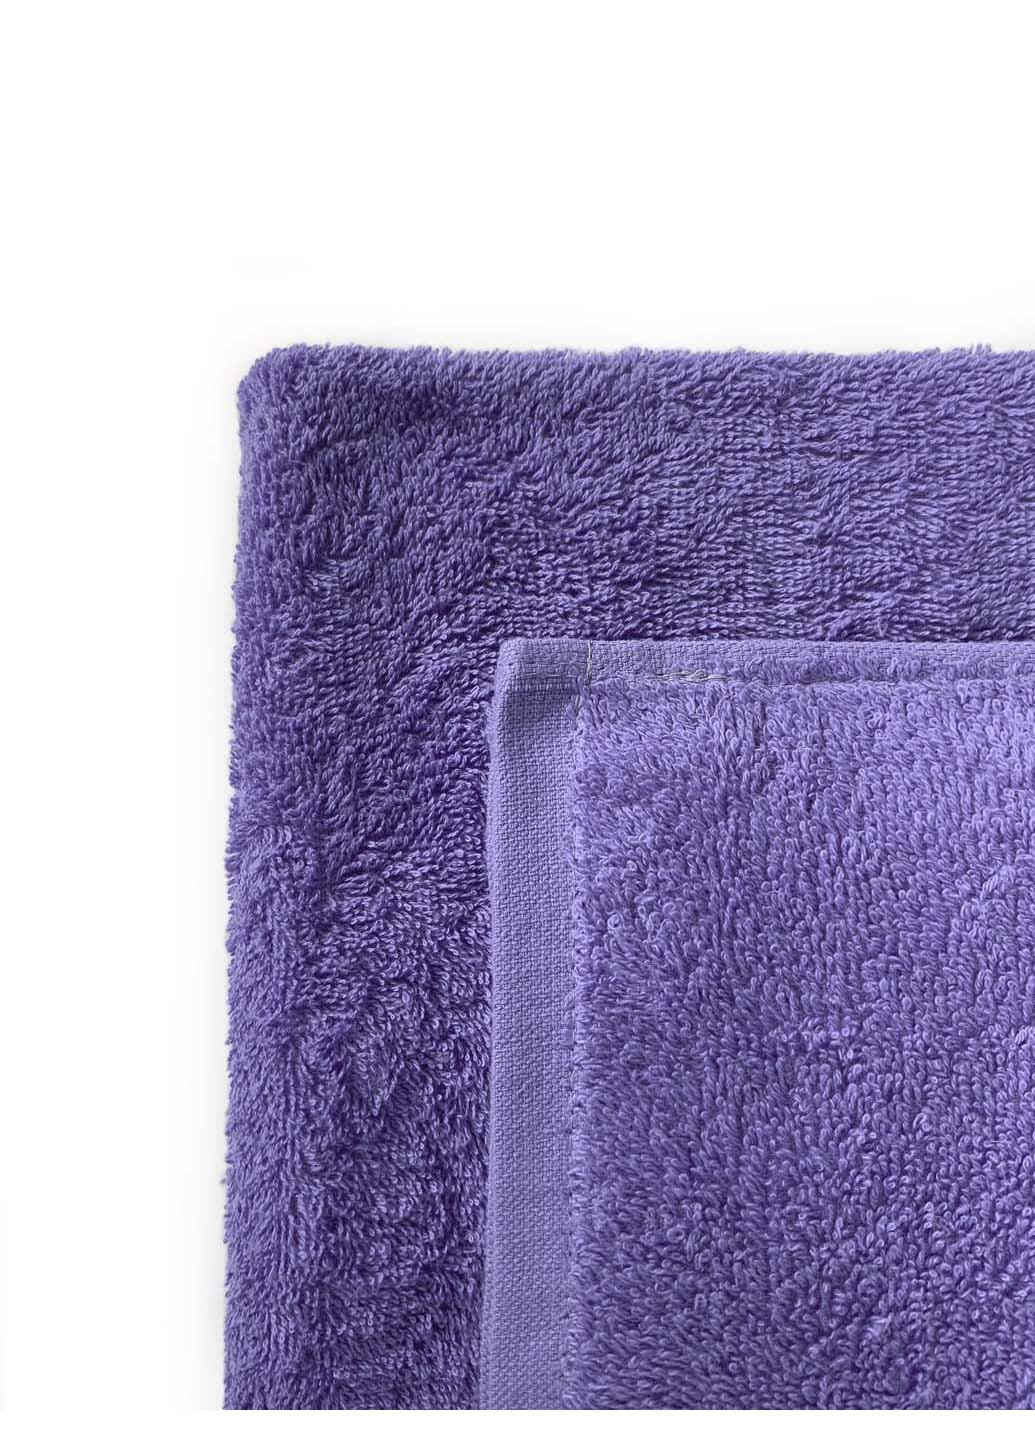 Ashgabat Dokma Toplumy махровое полотенце для рук фиолетовый производство - Туркменистан